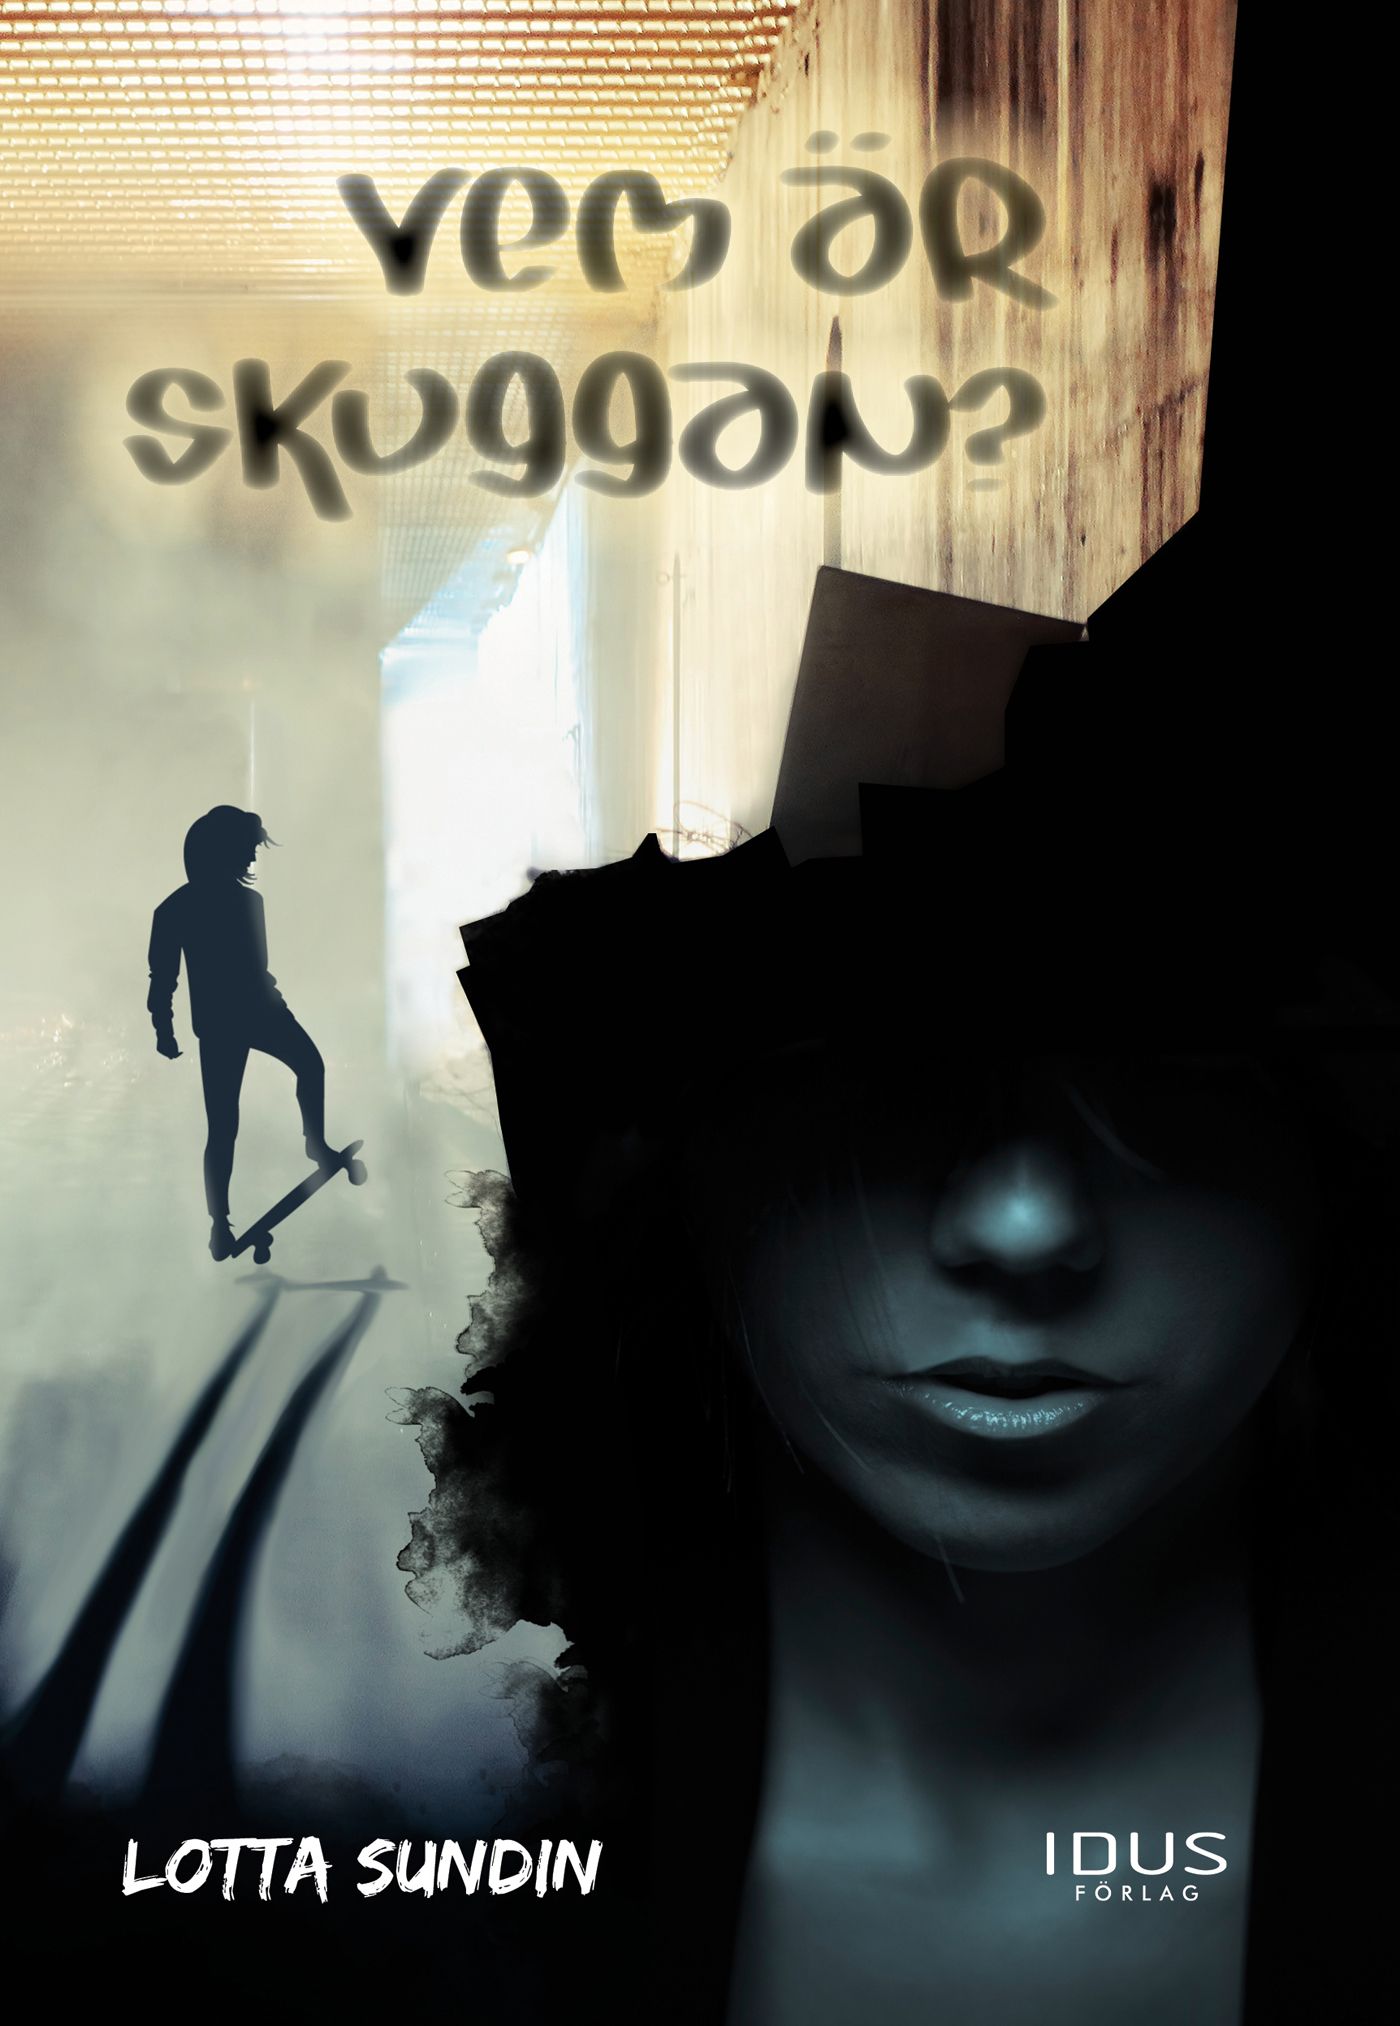 Vem är Skuggan?, eBook by Lotta Sundin